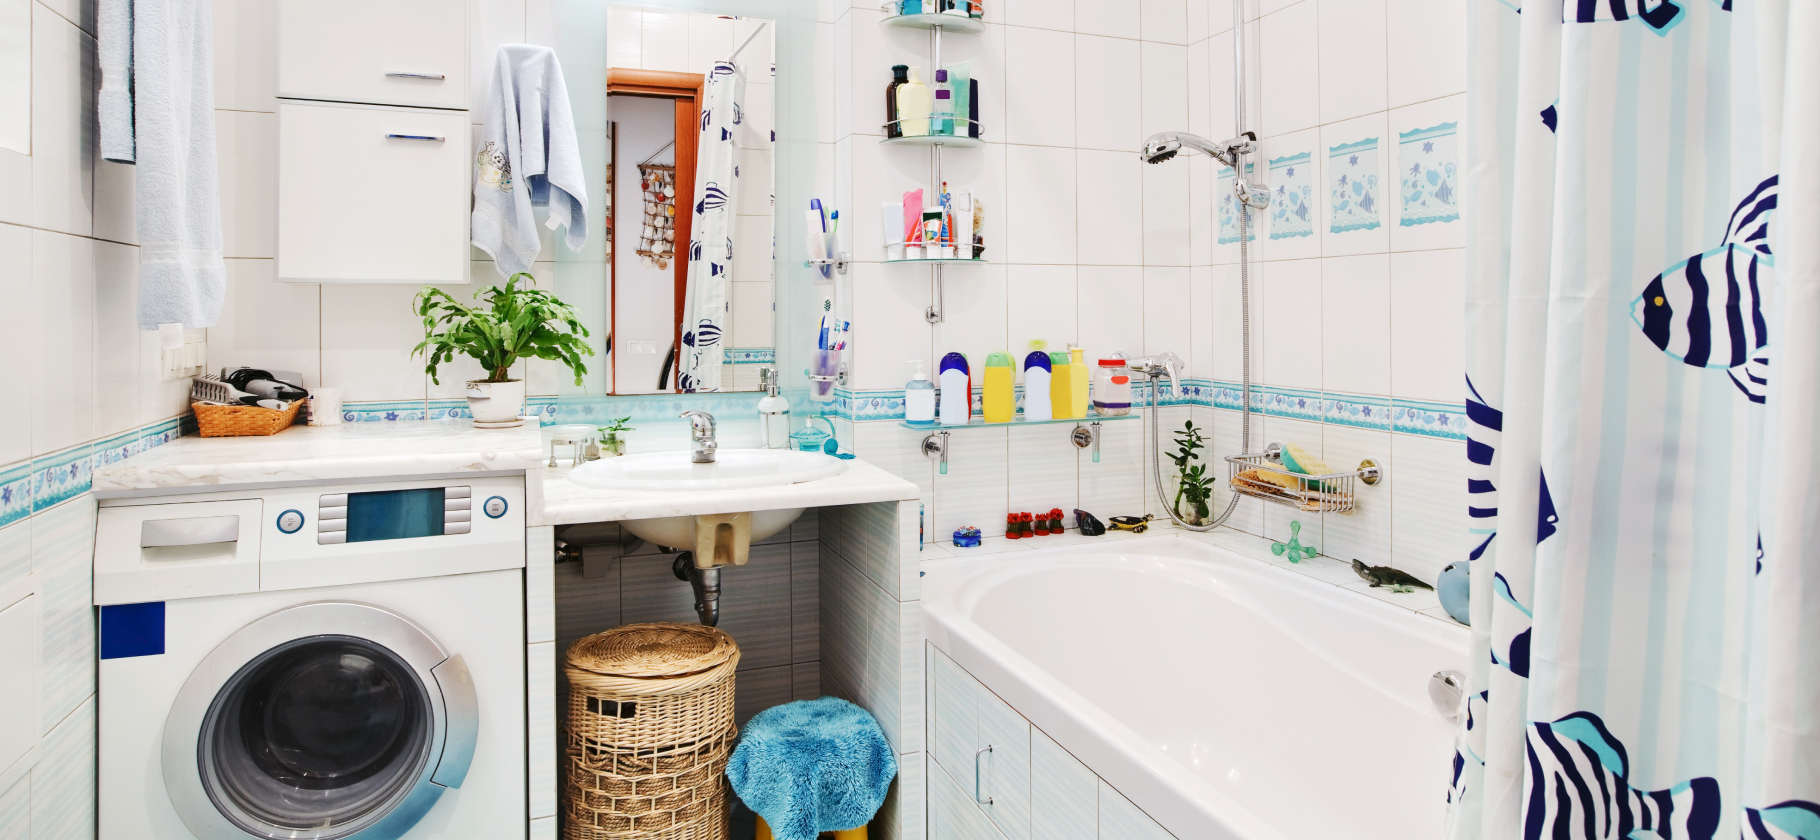 «Никаких батарей из пузырьков на краю ванной»: 7 способов сделать маленький санузел удобнее